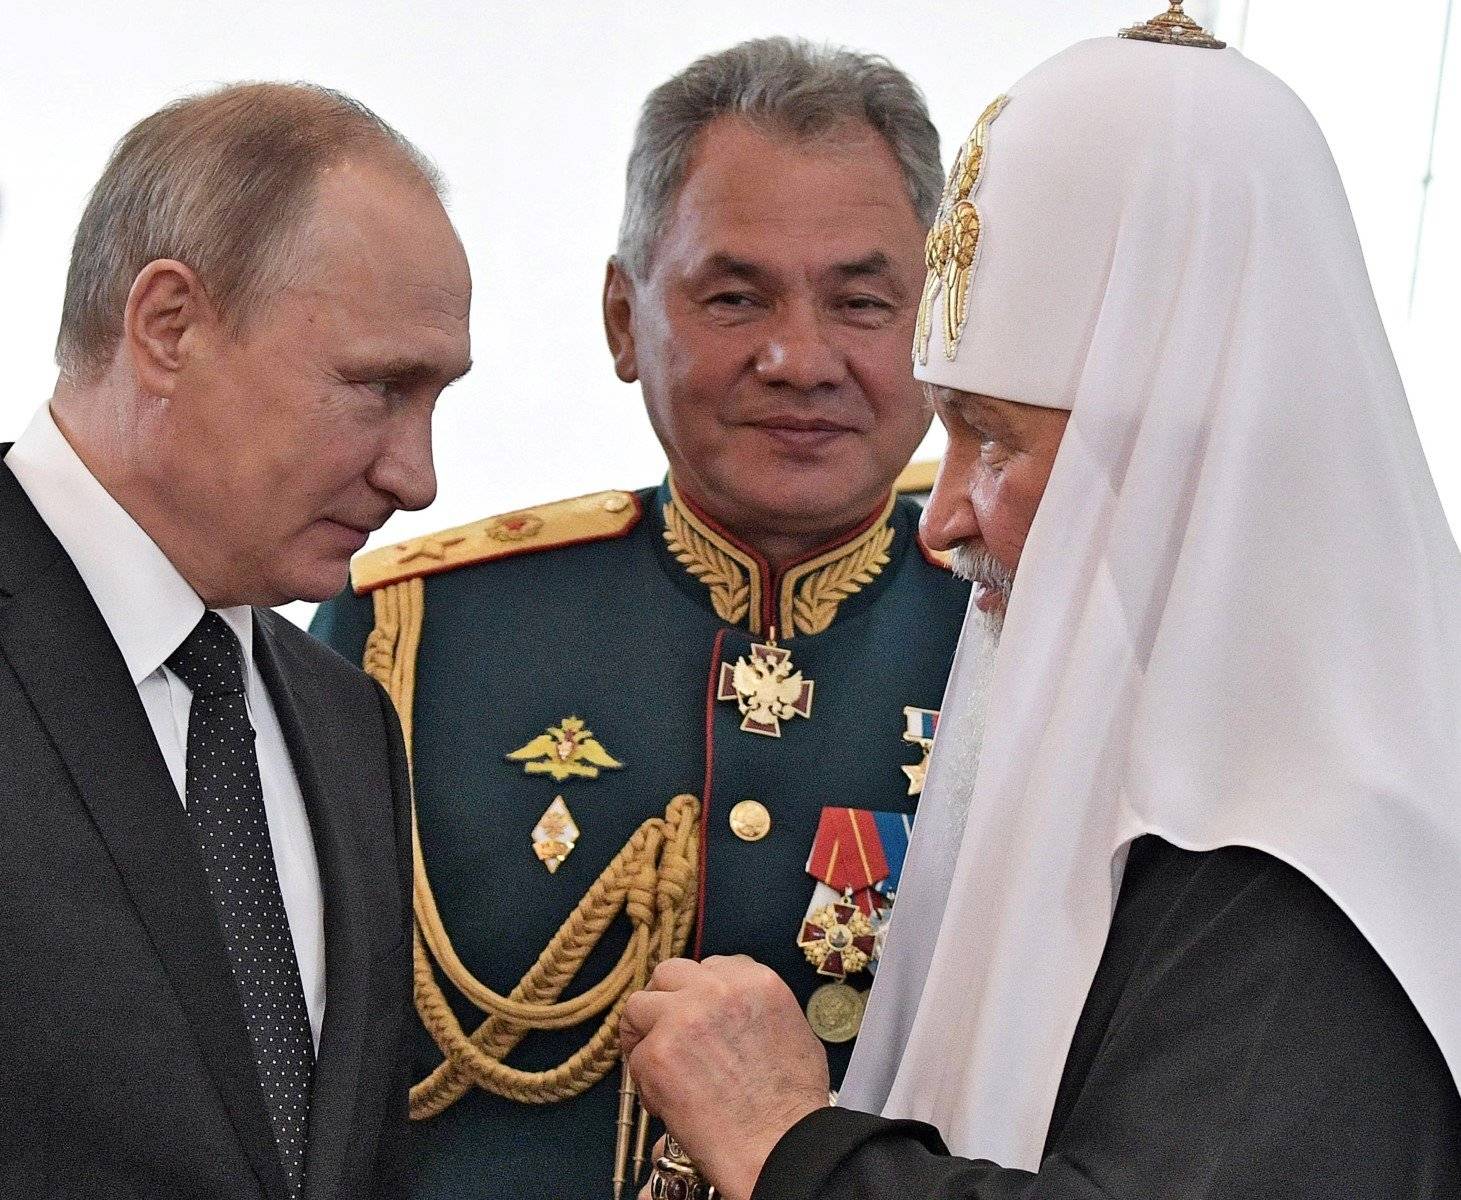 Putin z lewej, patriarcha Cyryl z prawej, w tle Szpjgu w mundurze generalskim